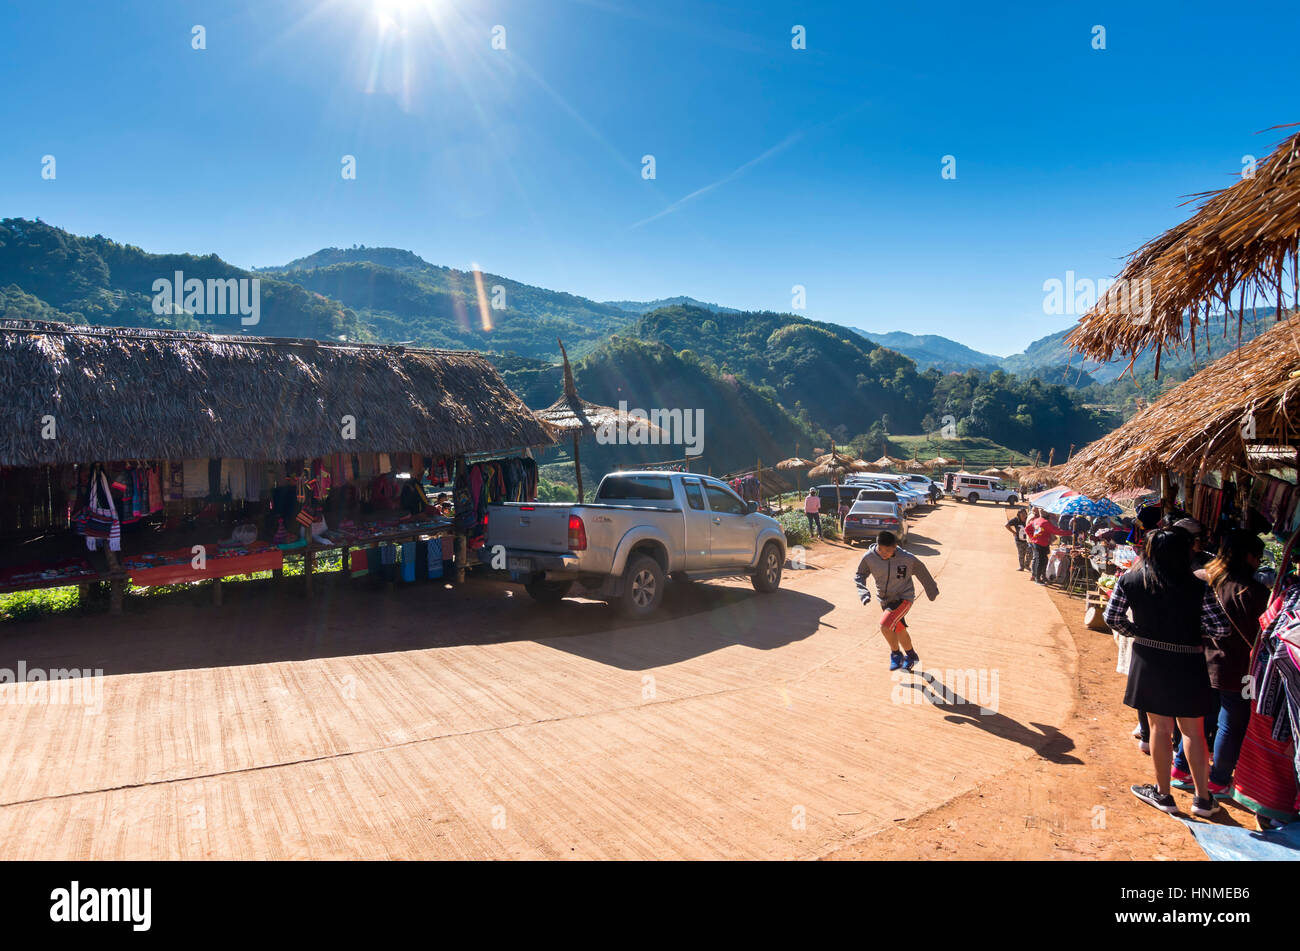 Besucher auf dem Markt der Hügel Stamm Dorf in den Bergen von Nord-Thailand. Stockfoto